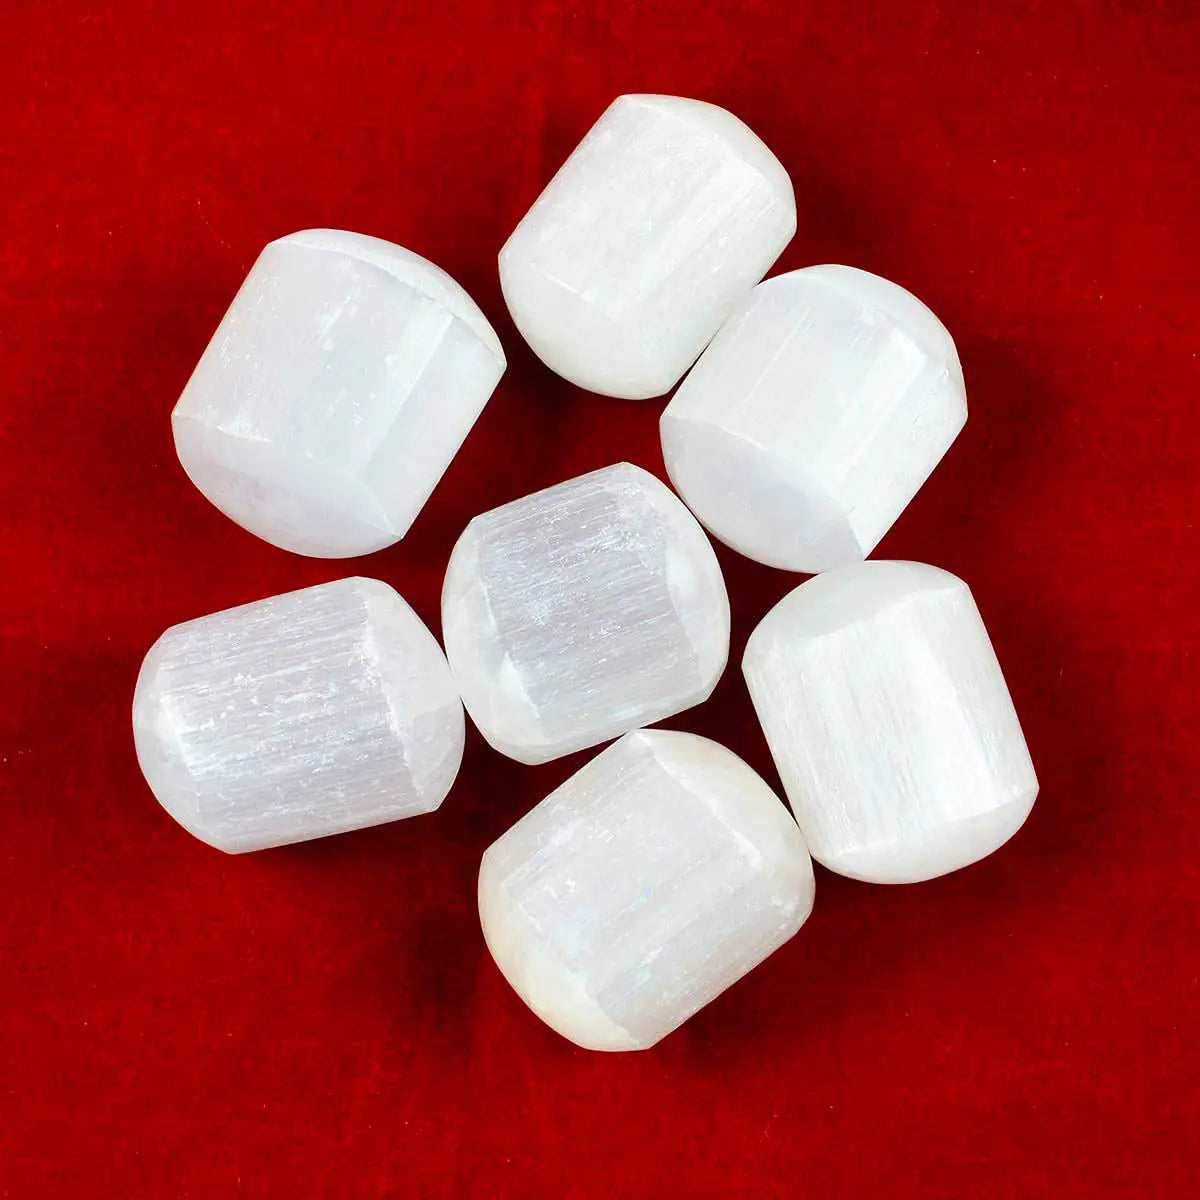 Selenite - Chakra Crystals Healing Stones Healing Crystal Home